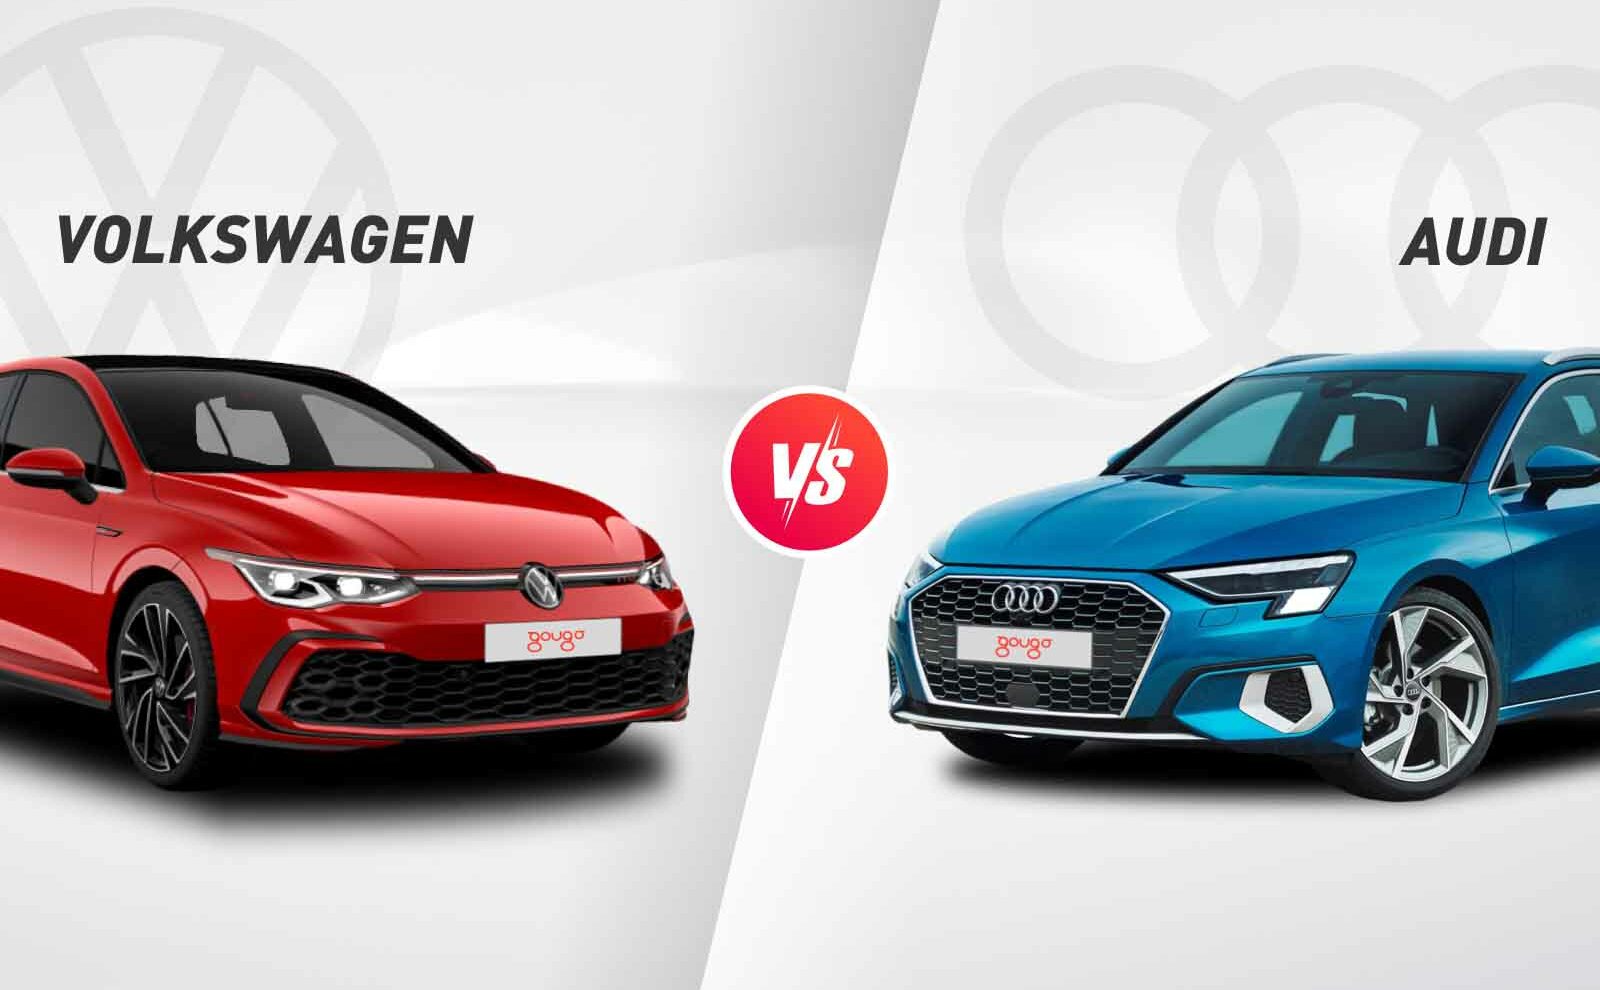 Audi o Volkswagen: te ayudamos a decidir